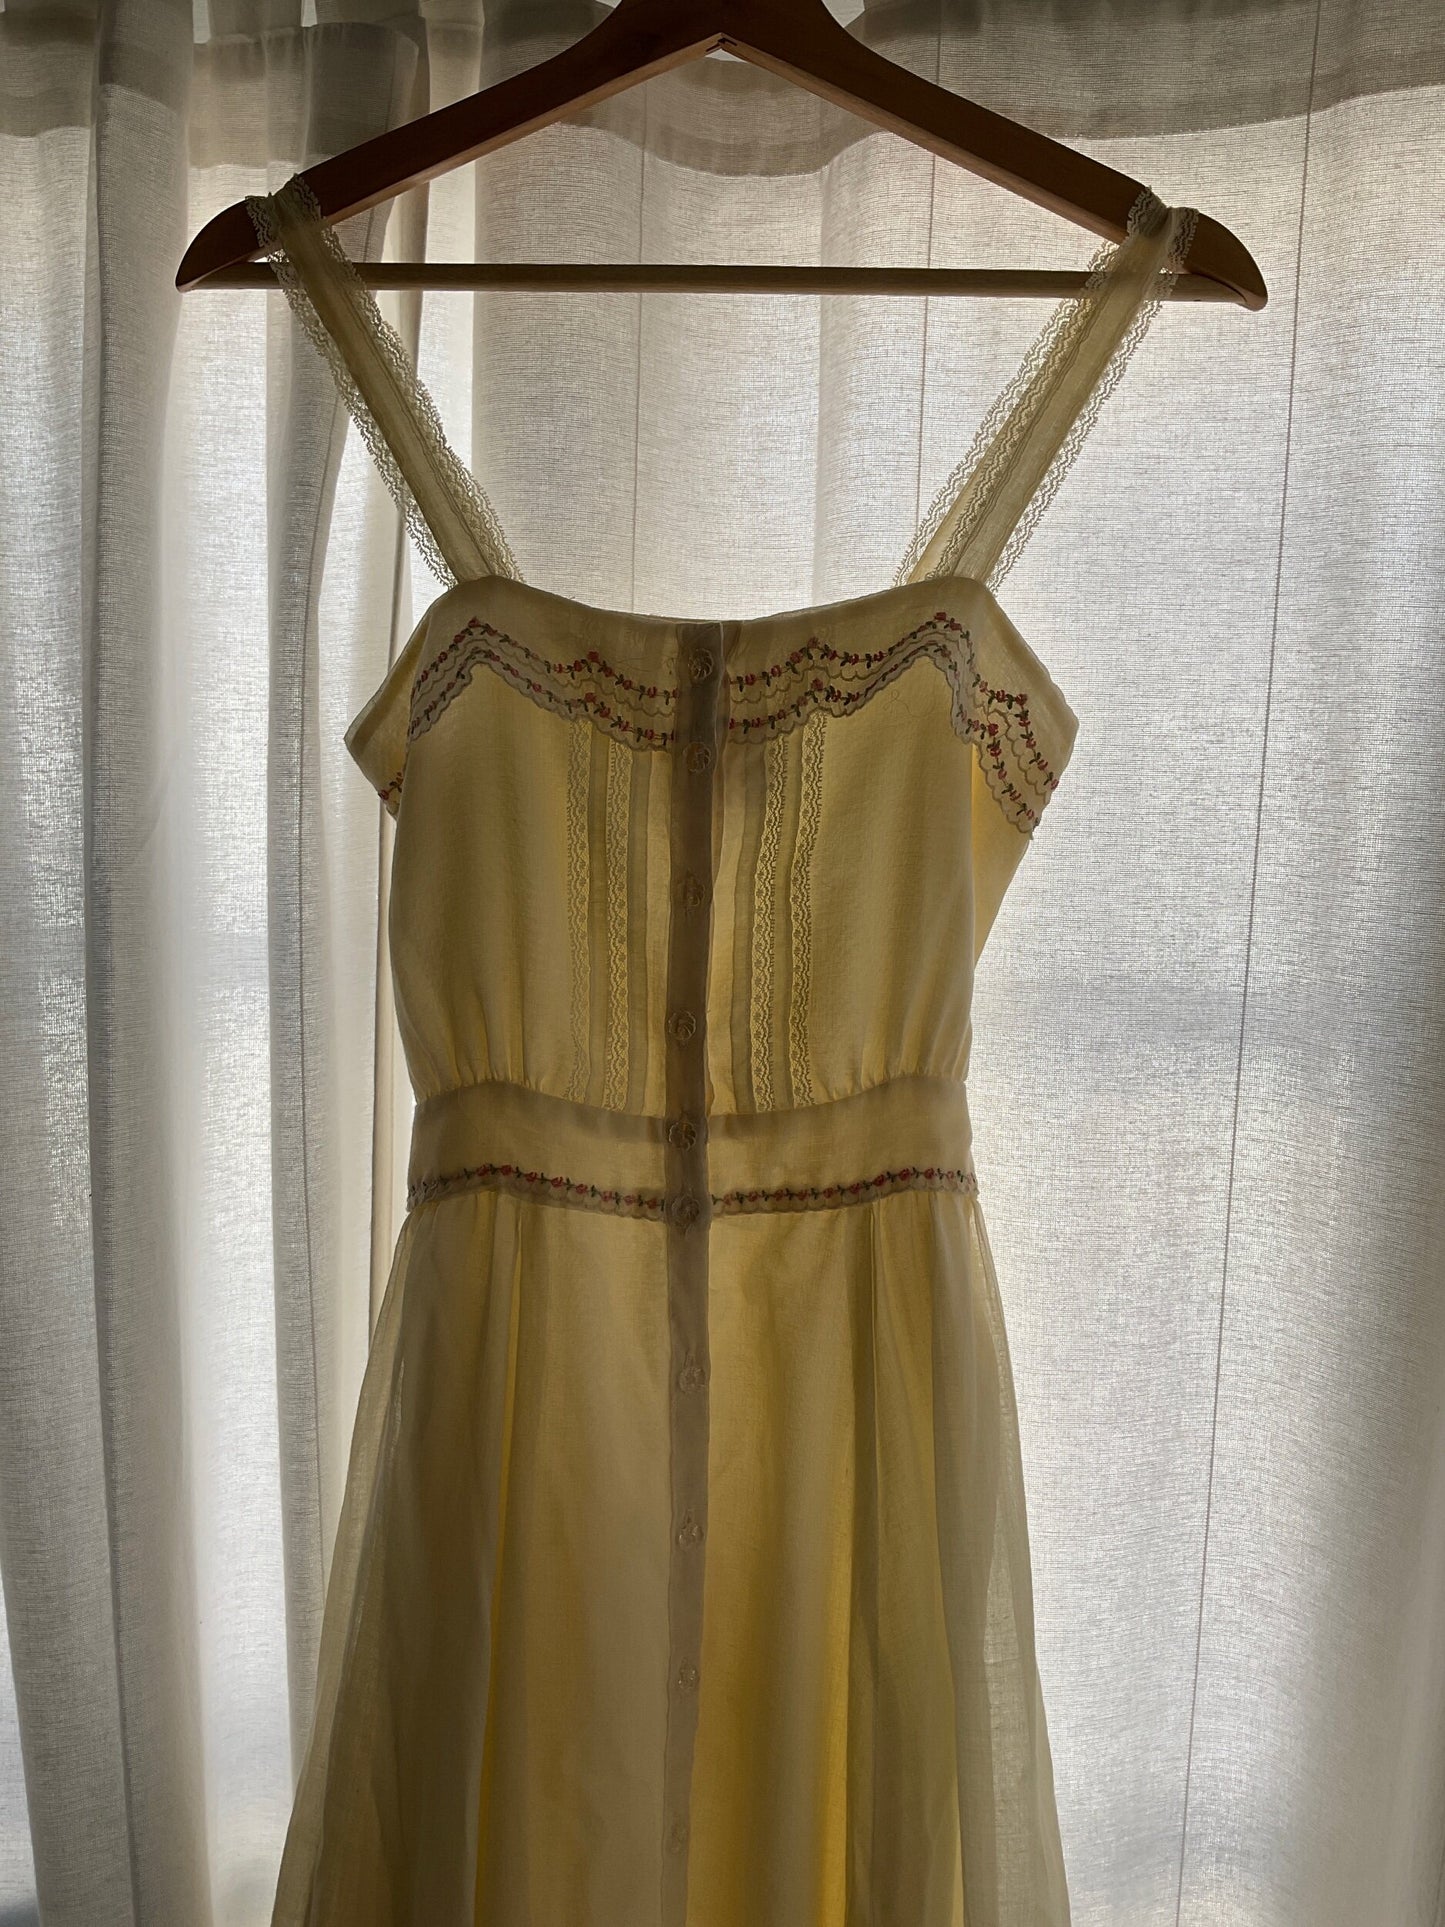 Gunne Sax Embroidered Prairie Dress (XS/S)